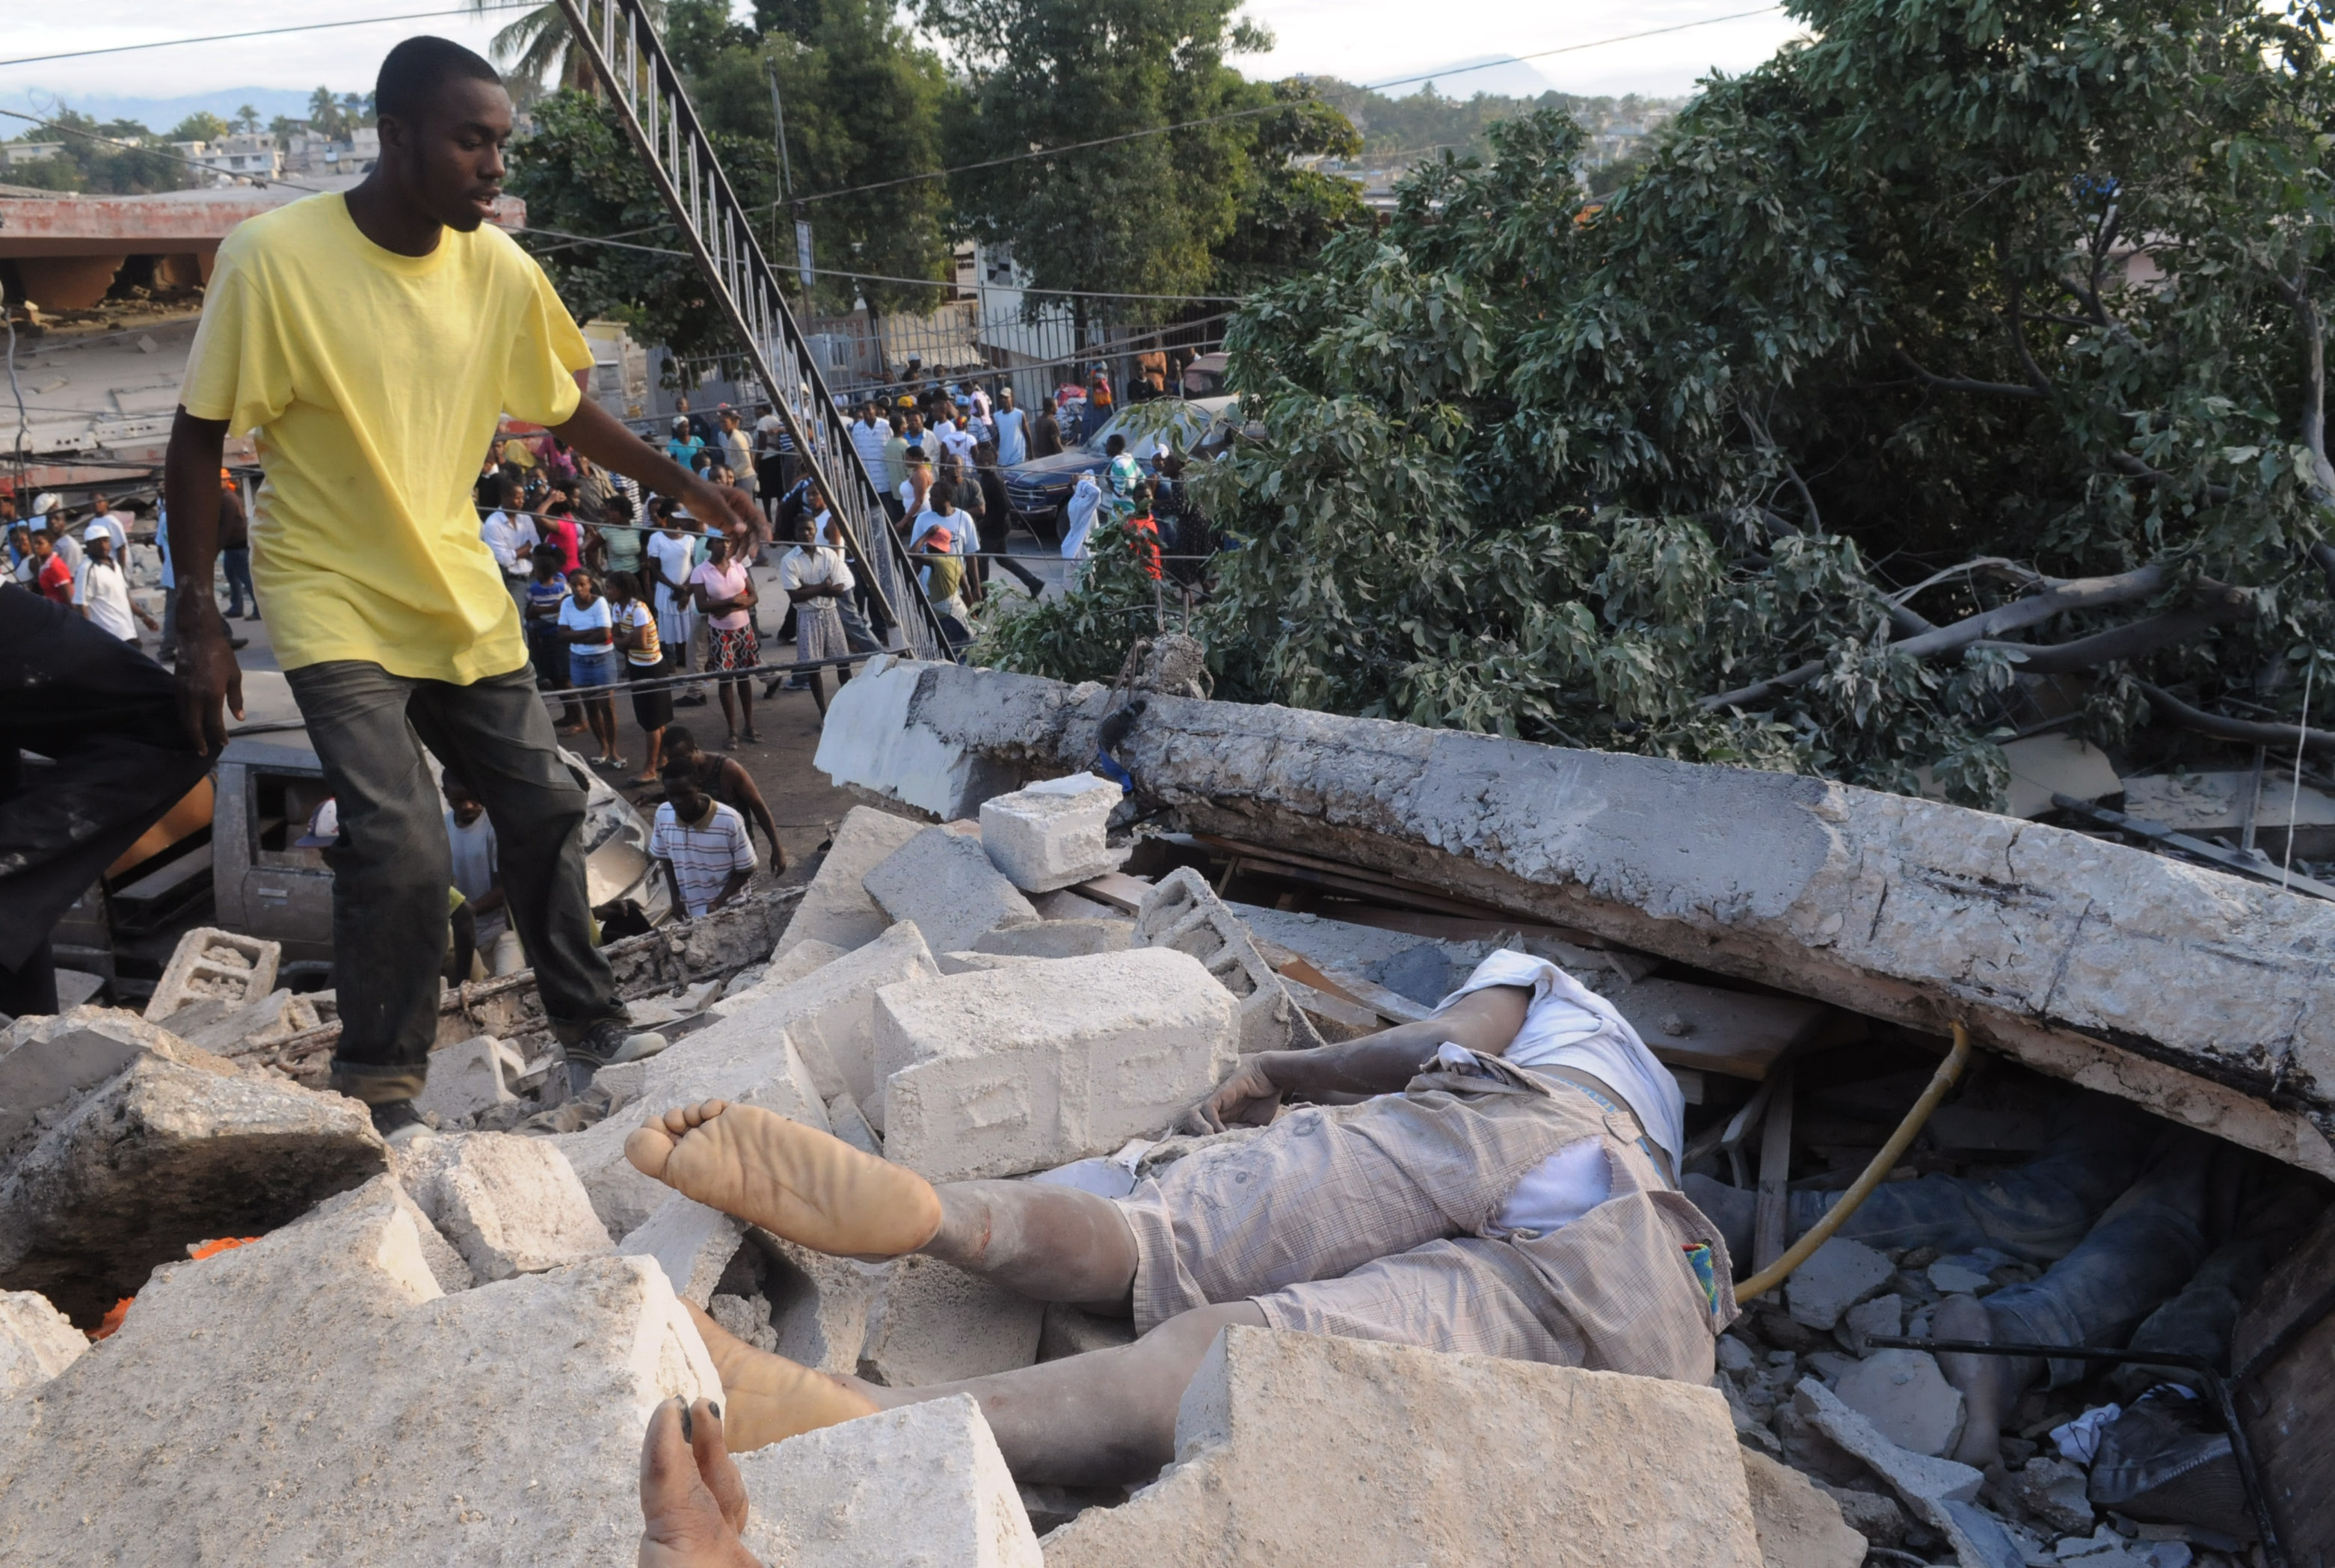 100 000 människor har dött i Haiti enligt landets premiärminister. 